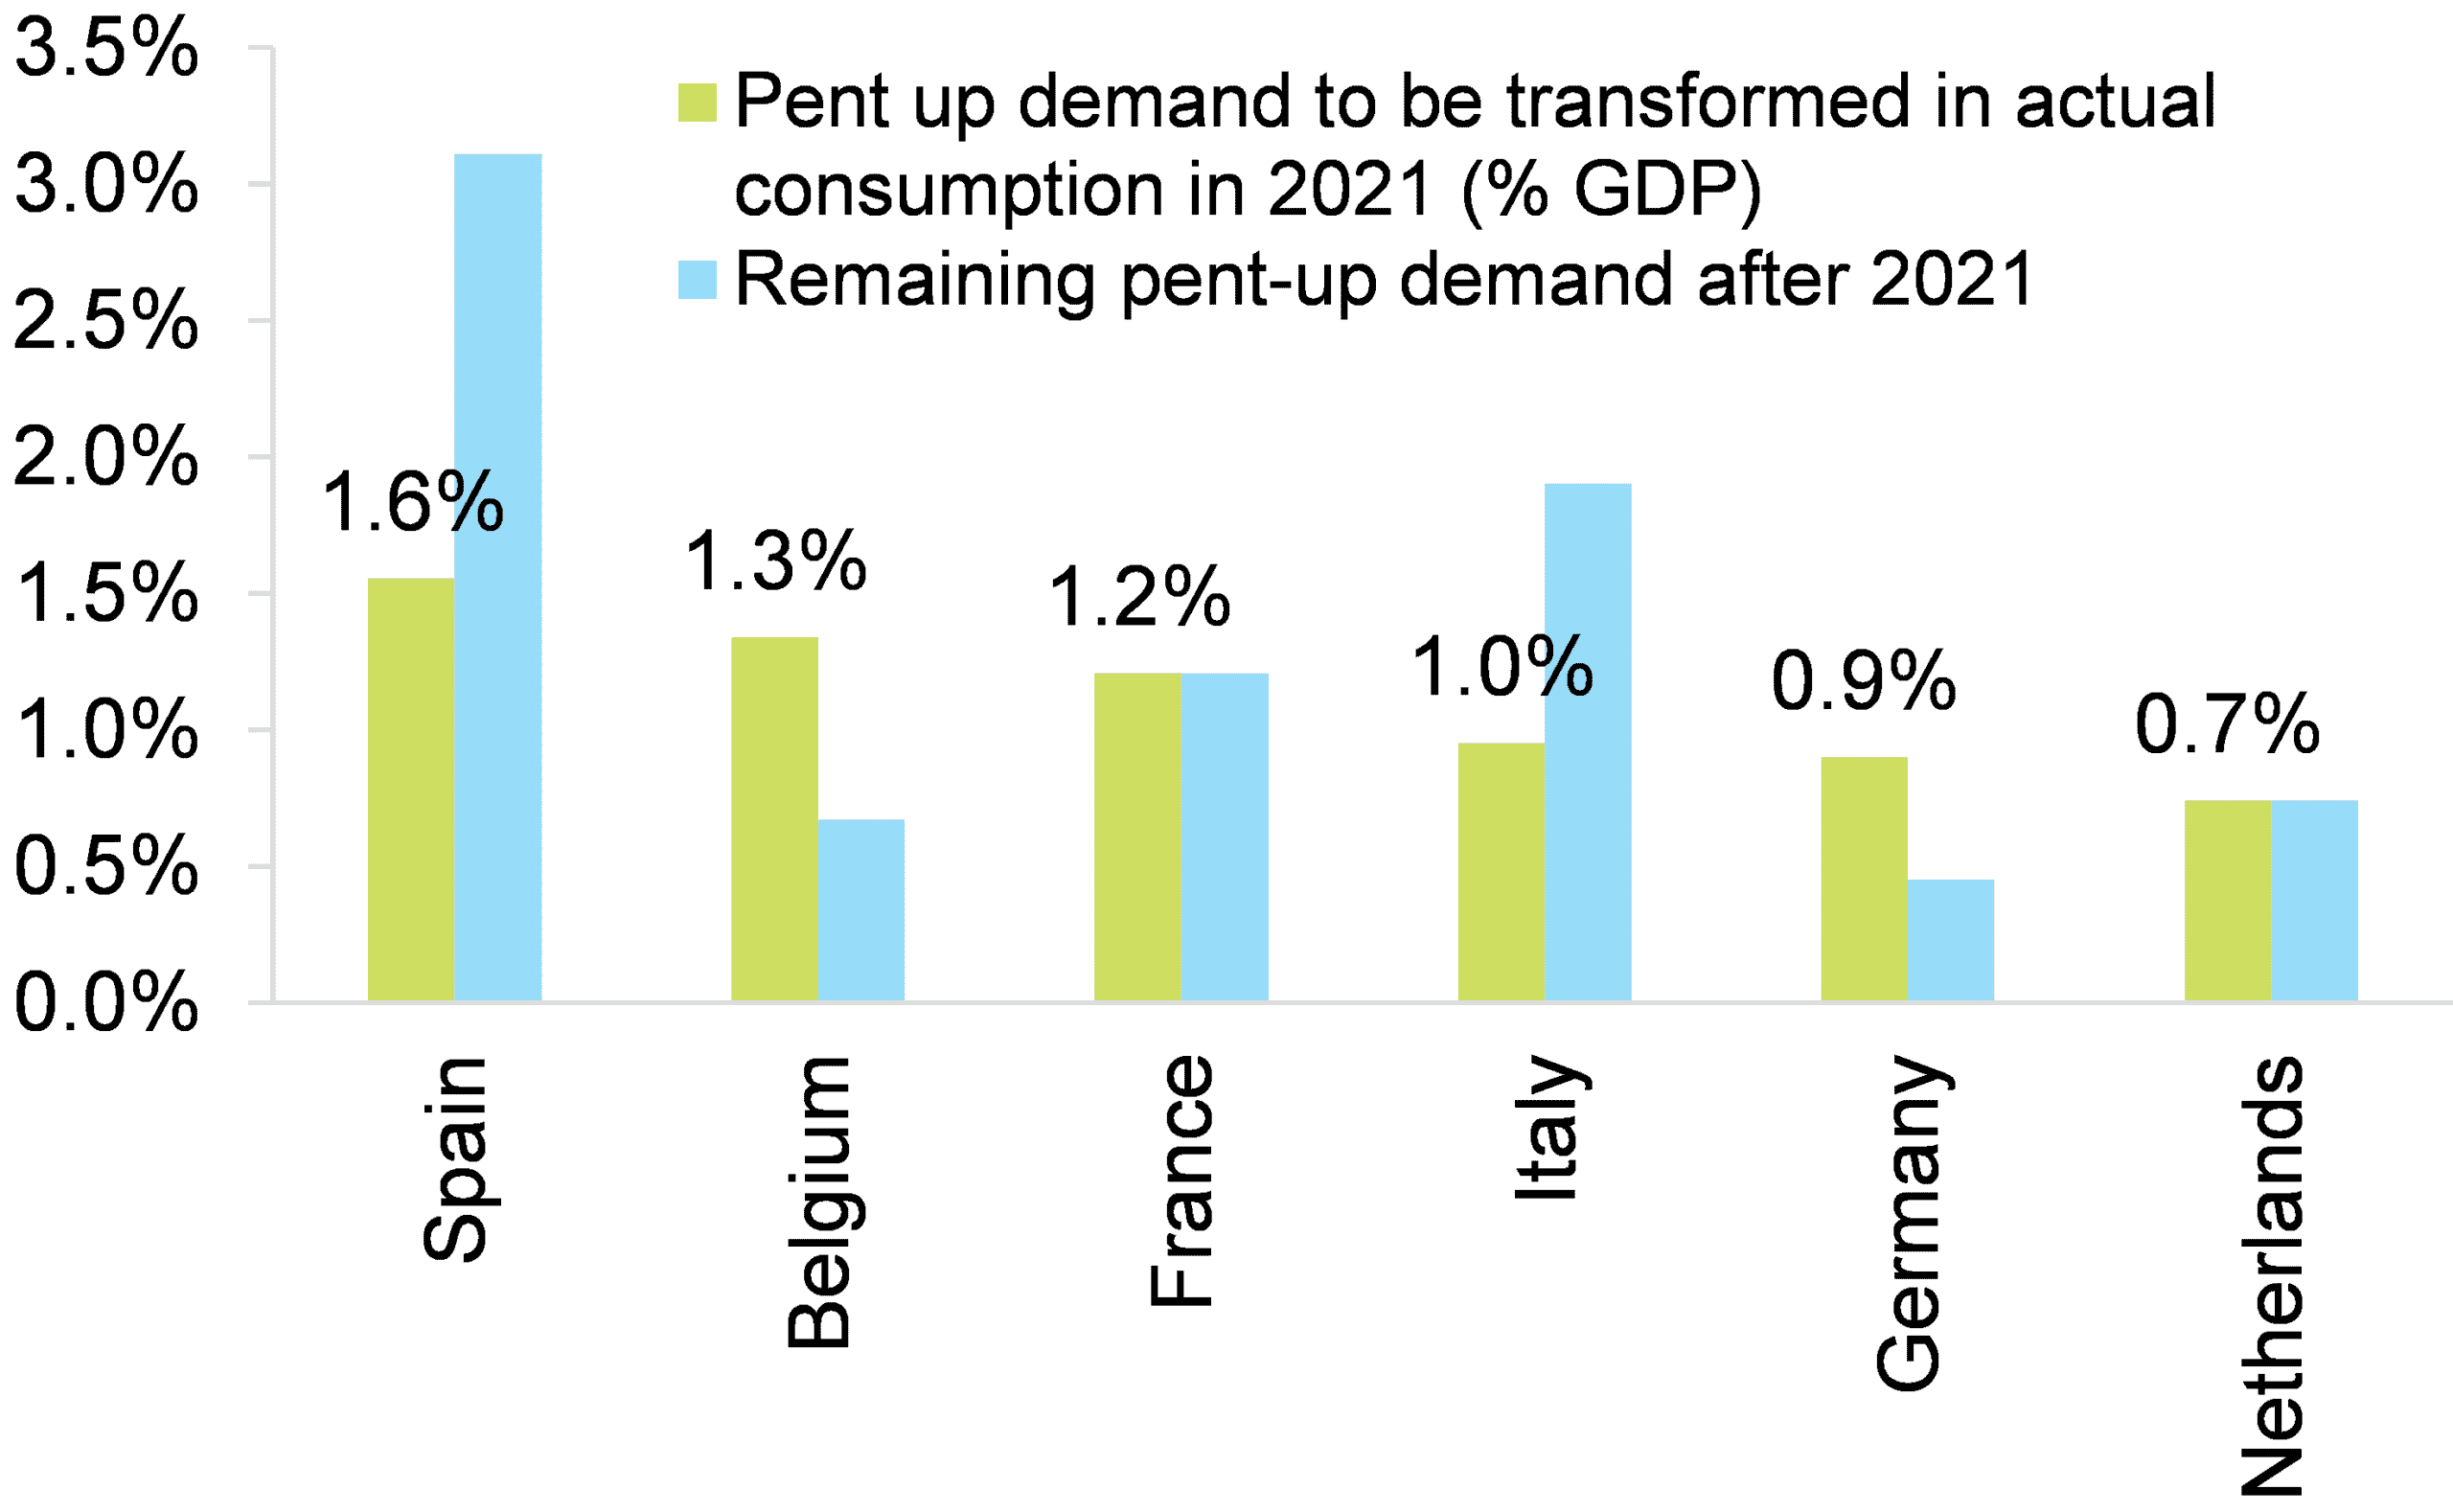 Gráfico de la demanda acumulada en los sectores expuestos que se transformará en consumo real en 2021 (% del PIB) en Bélgica, Alemania, España, Francia, Italia y Países Bajos